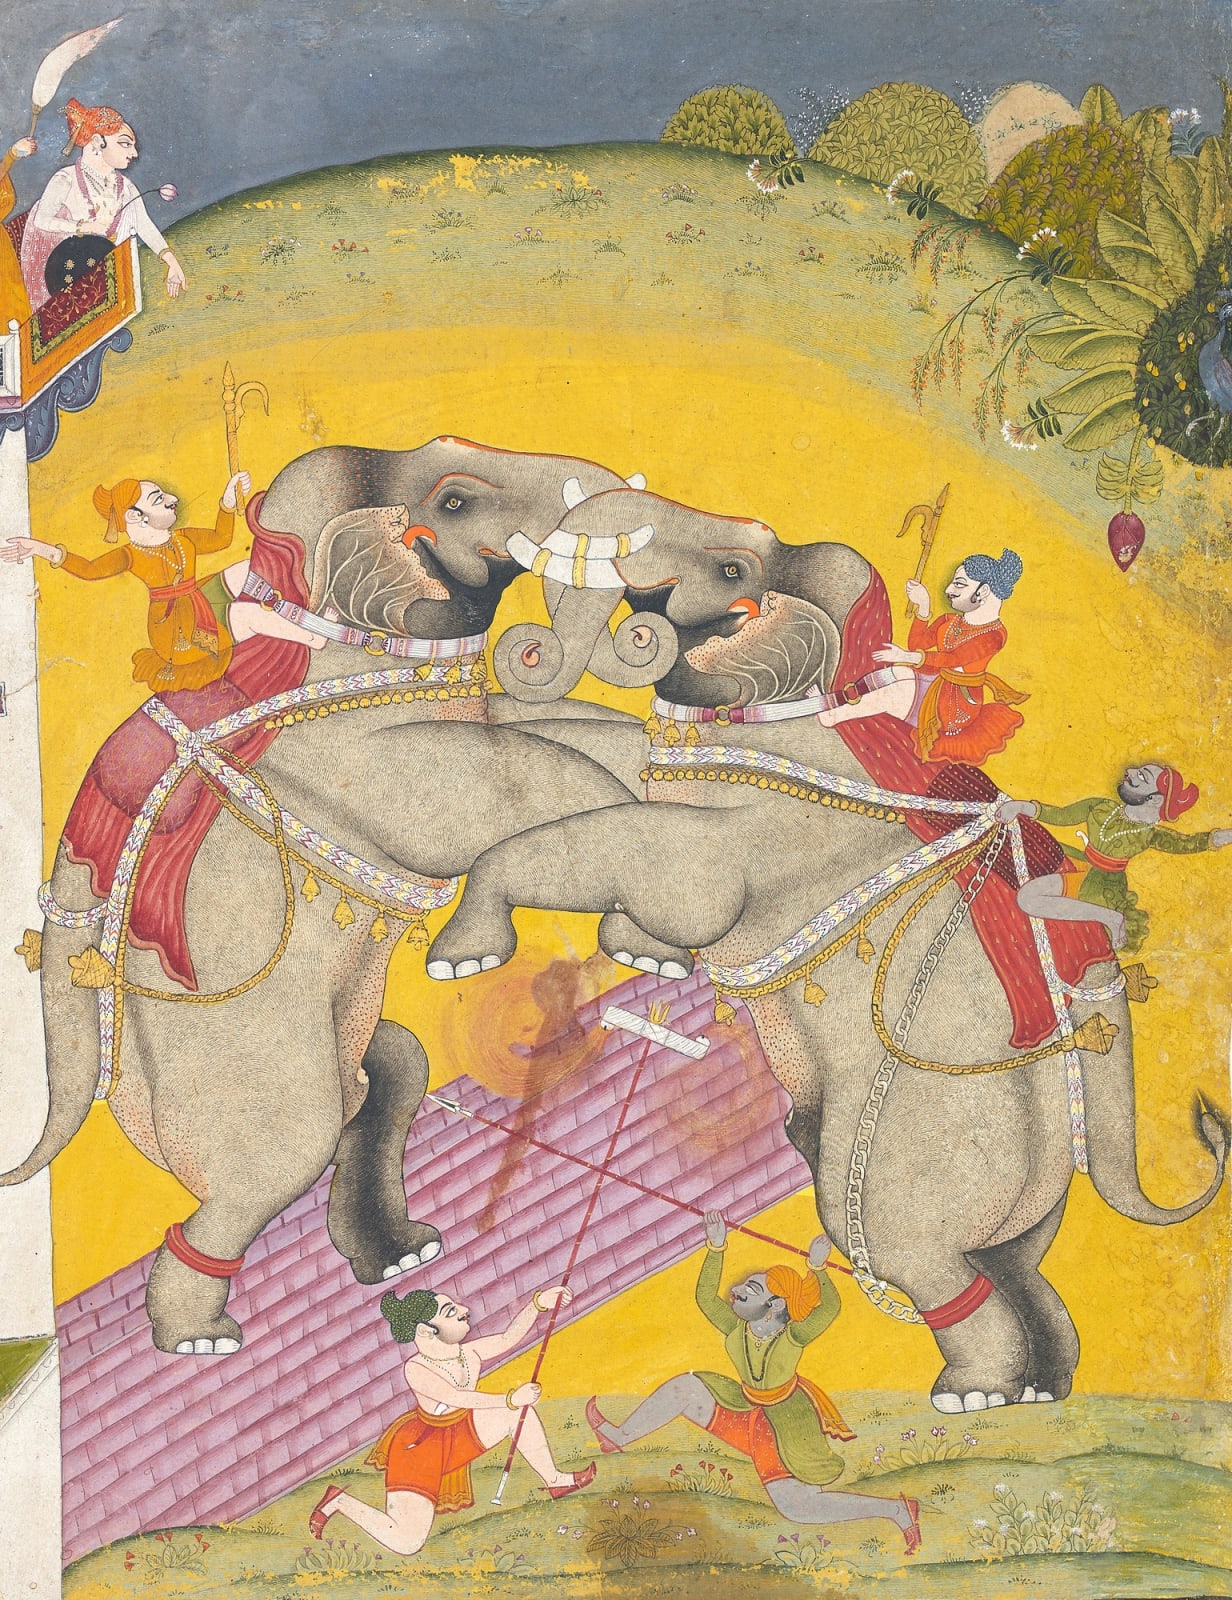 A Prince watching an Elephant Fight, Bundi, c. 1760-80